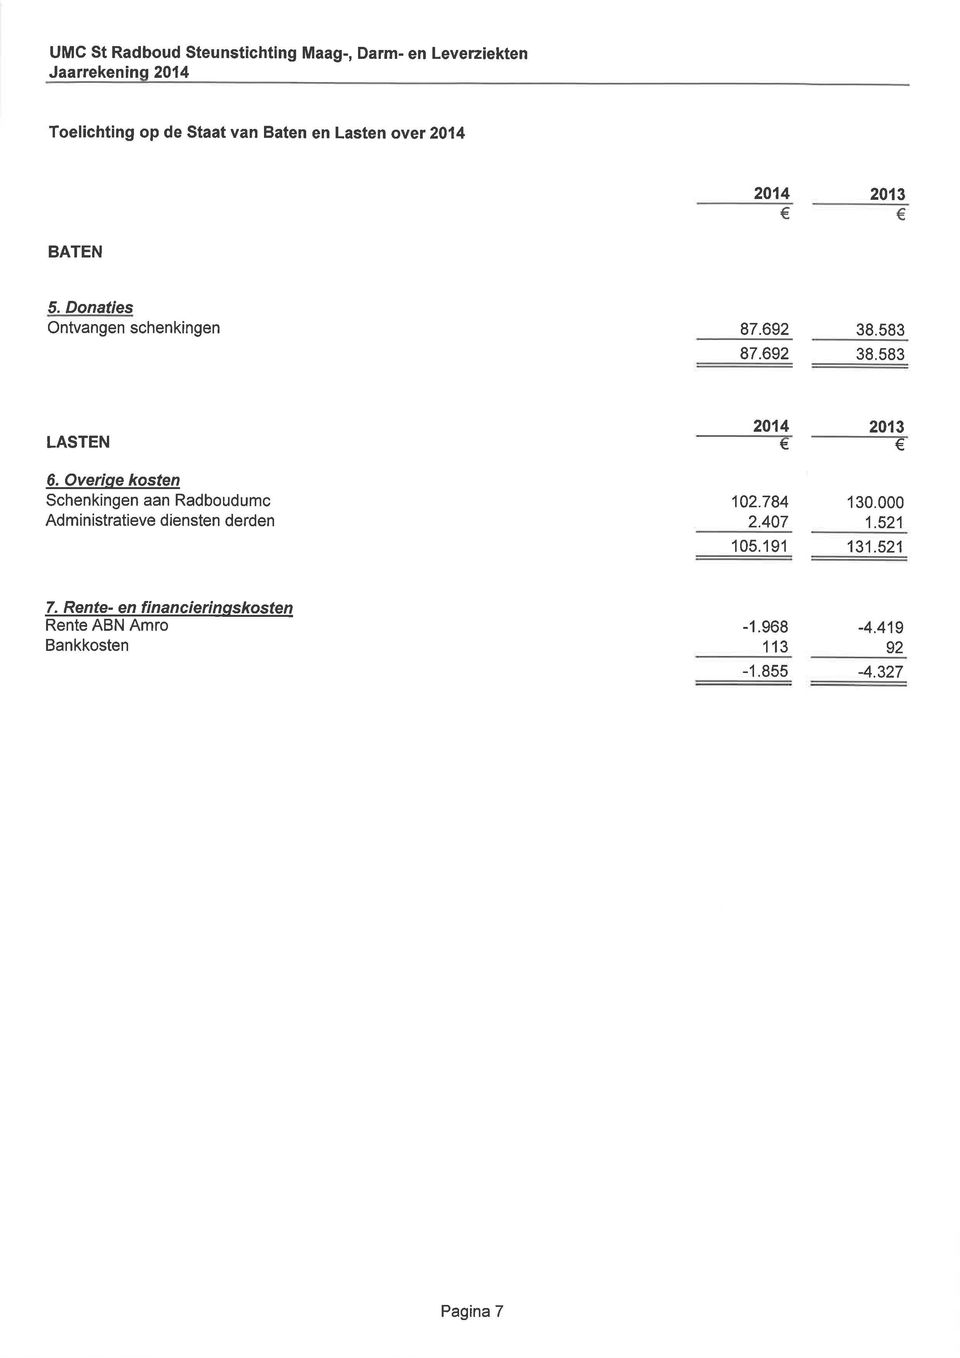 Overiqe kosten Schenkingen aan Radboudumc Administratieve diensten derden 102.784 2.407 130.000 1.521 1 05.